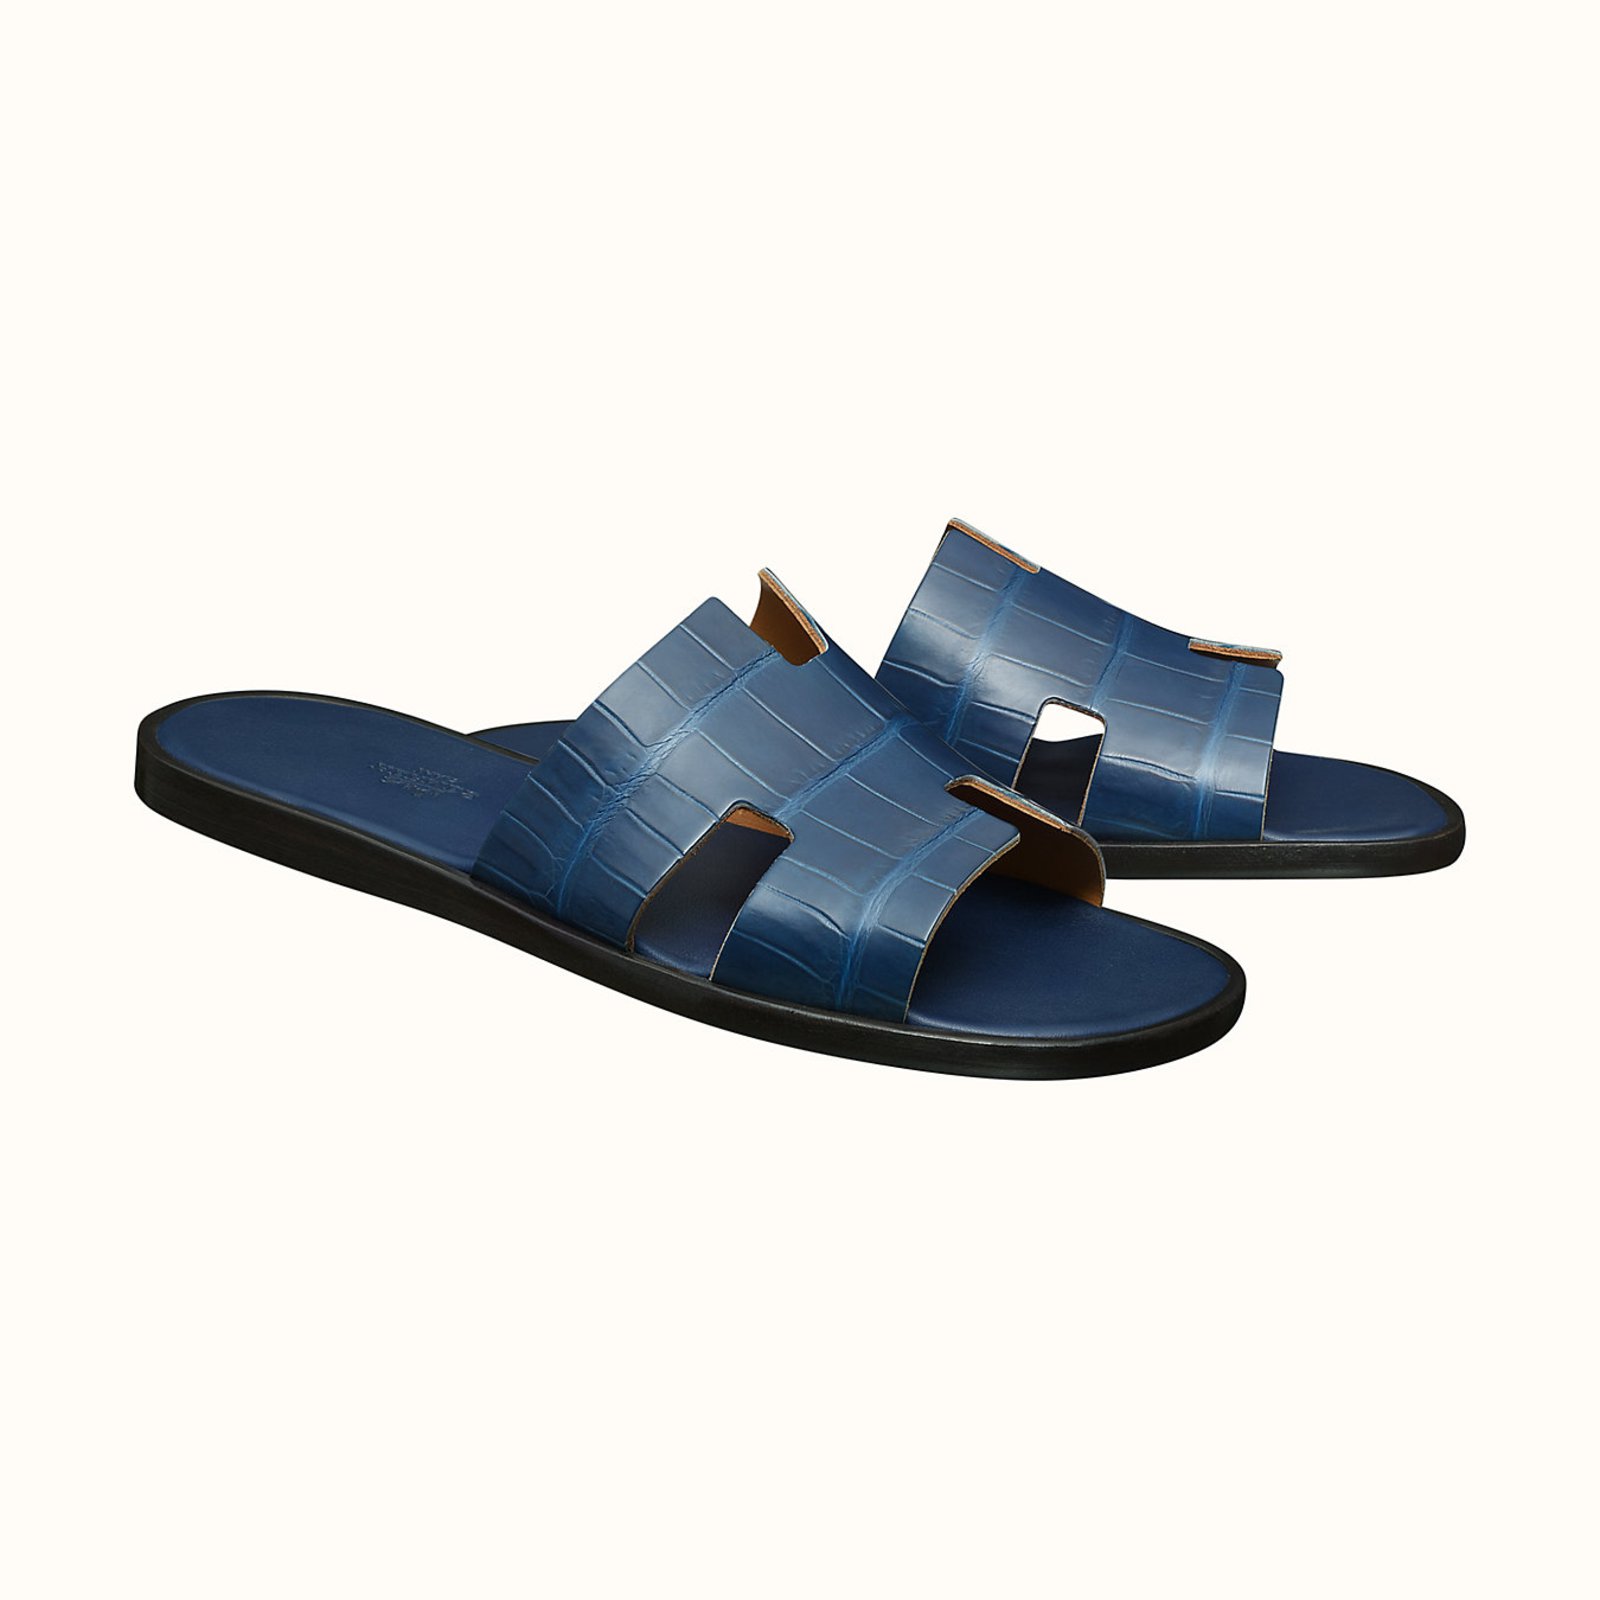 blue hermes sandals